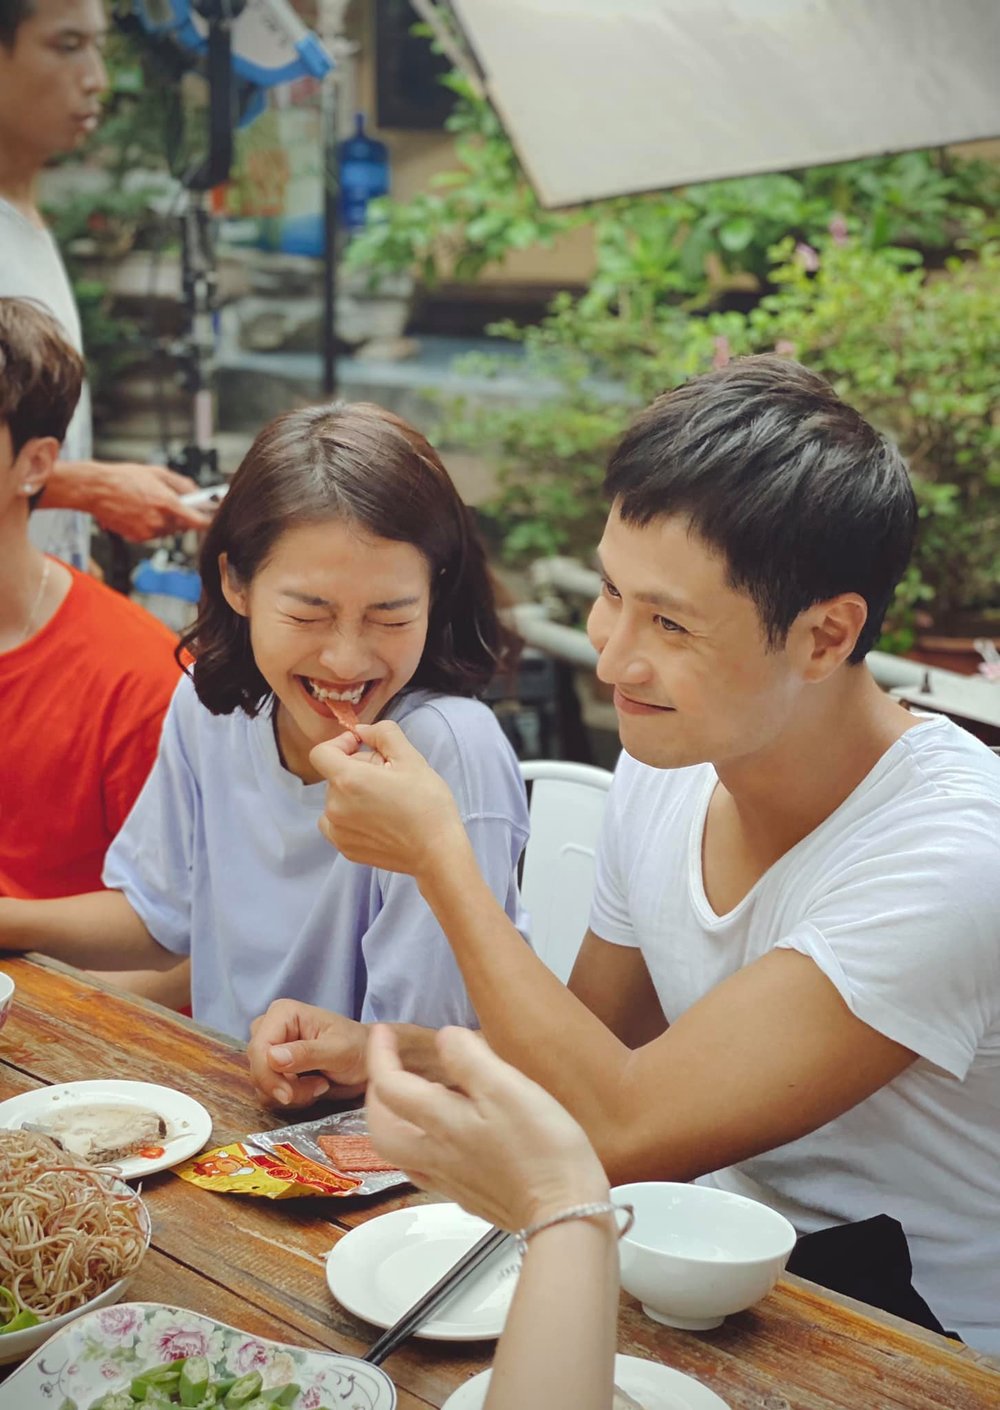  
Thanh Sơn và Khả Ngân tình cảm đút cho nhau ăn trên phim trường. (Ảnh: FBNV)